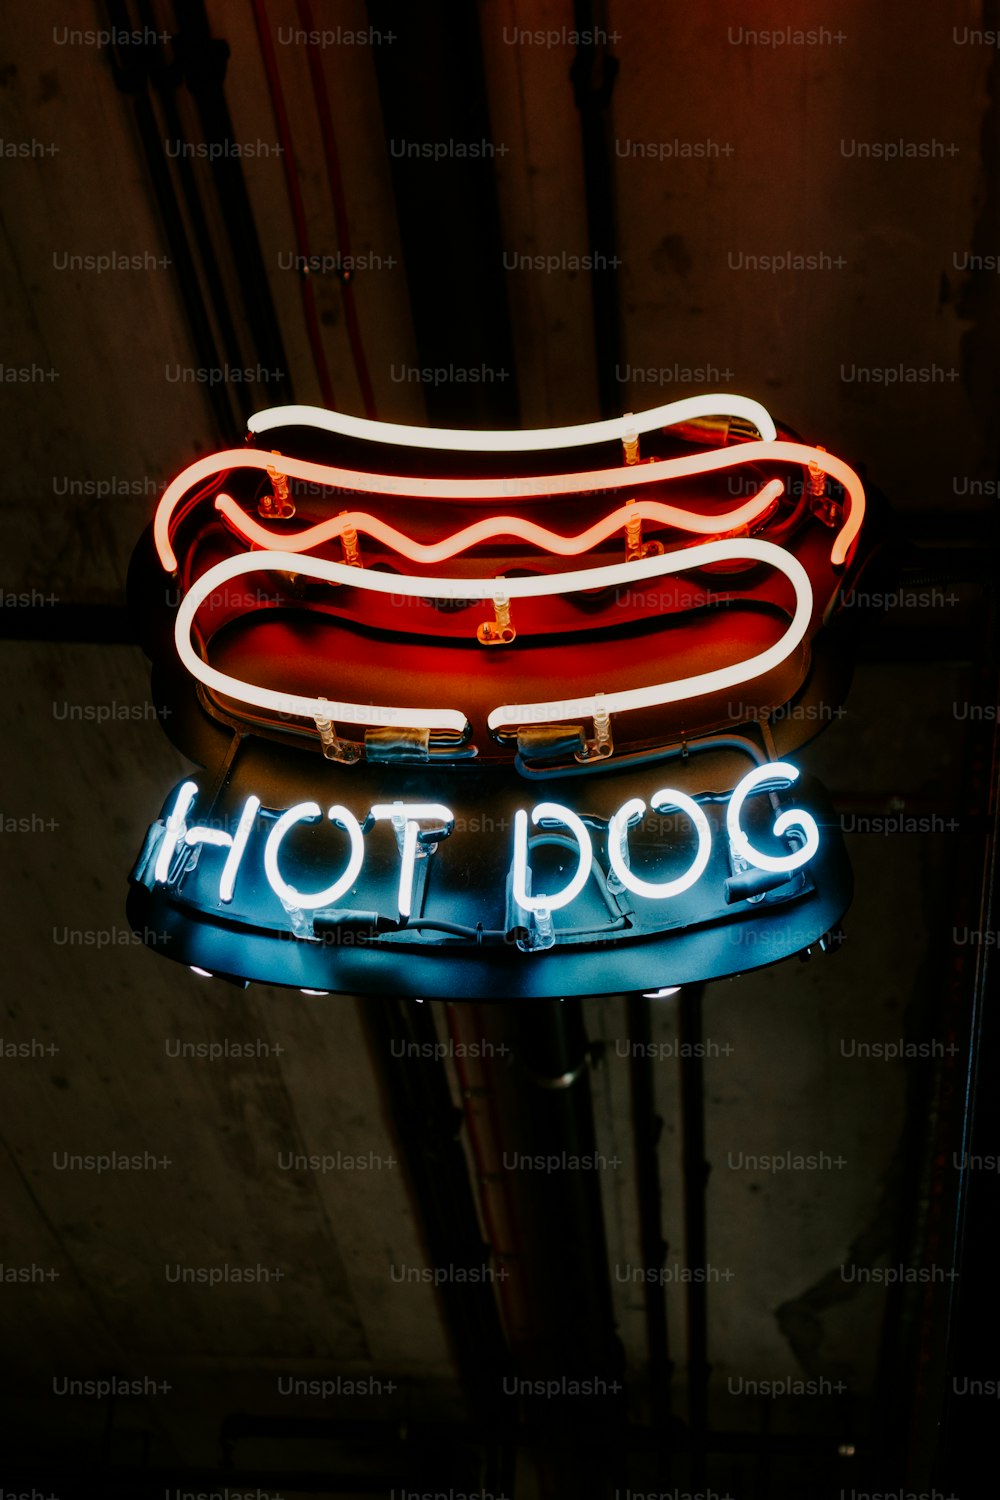 eine Leuchtreklame, auf der Hot Dog steht